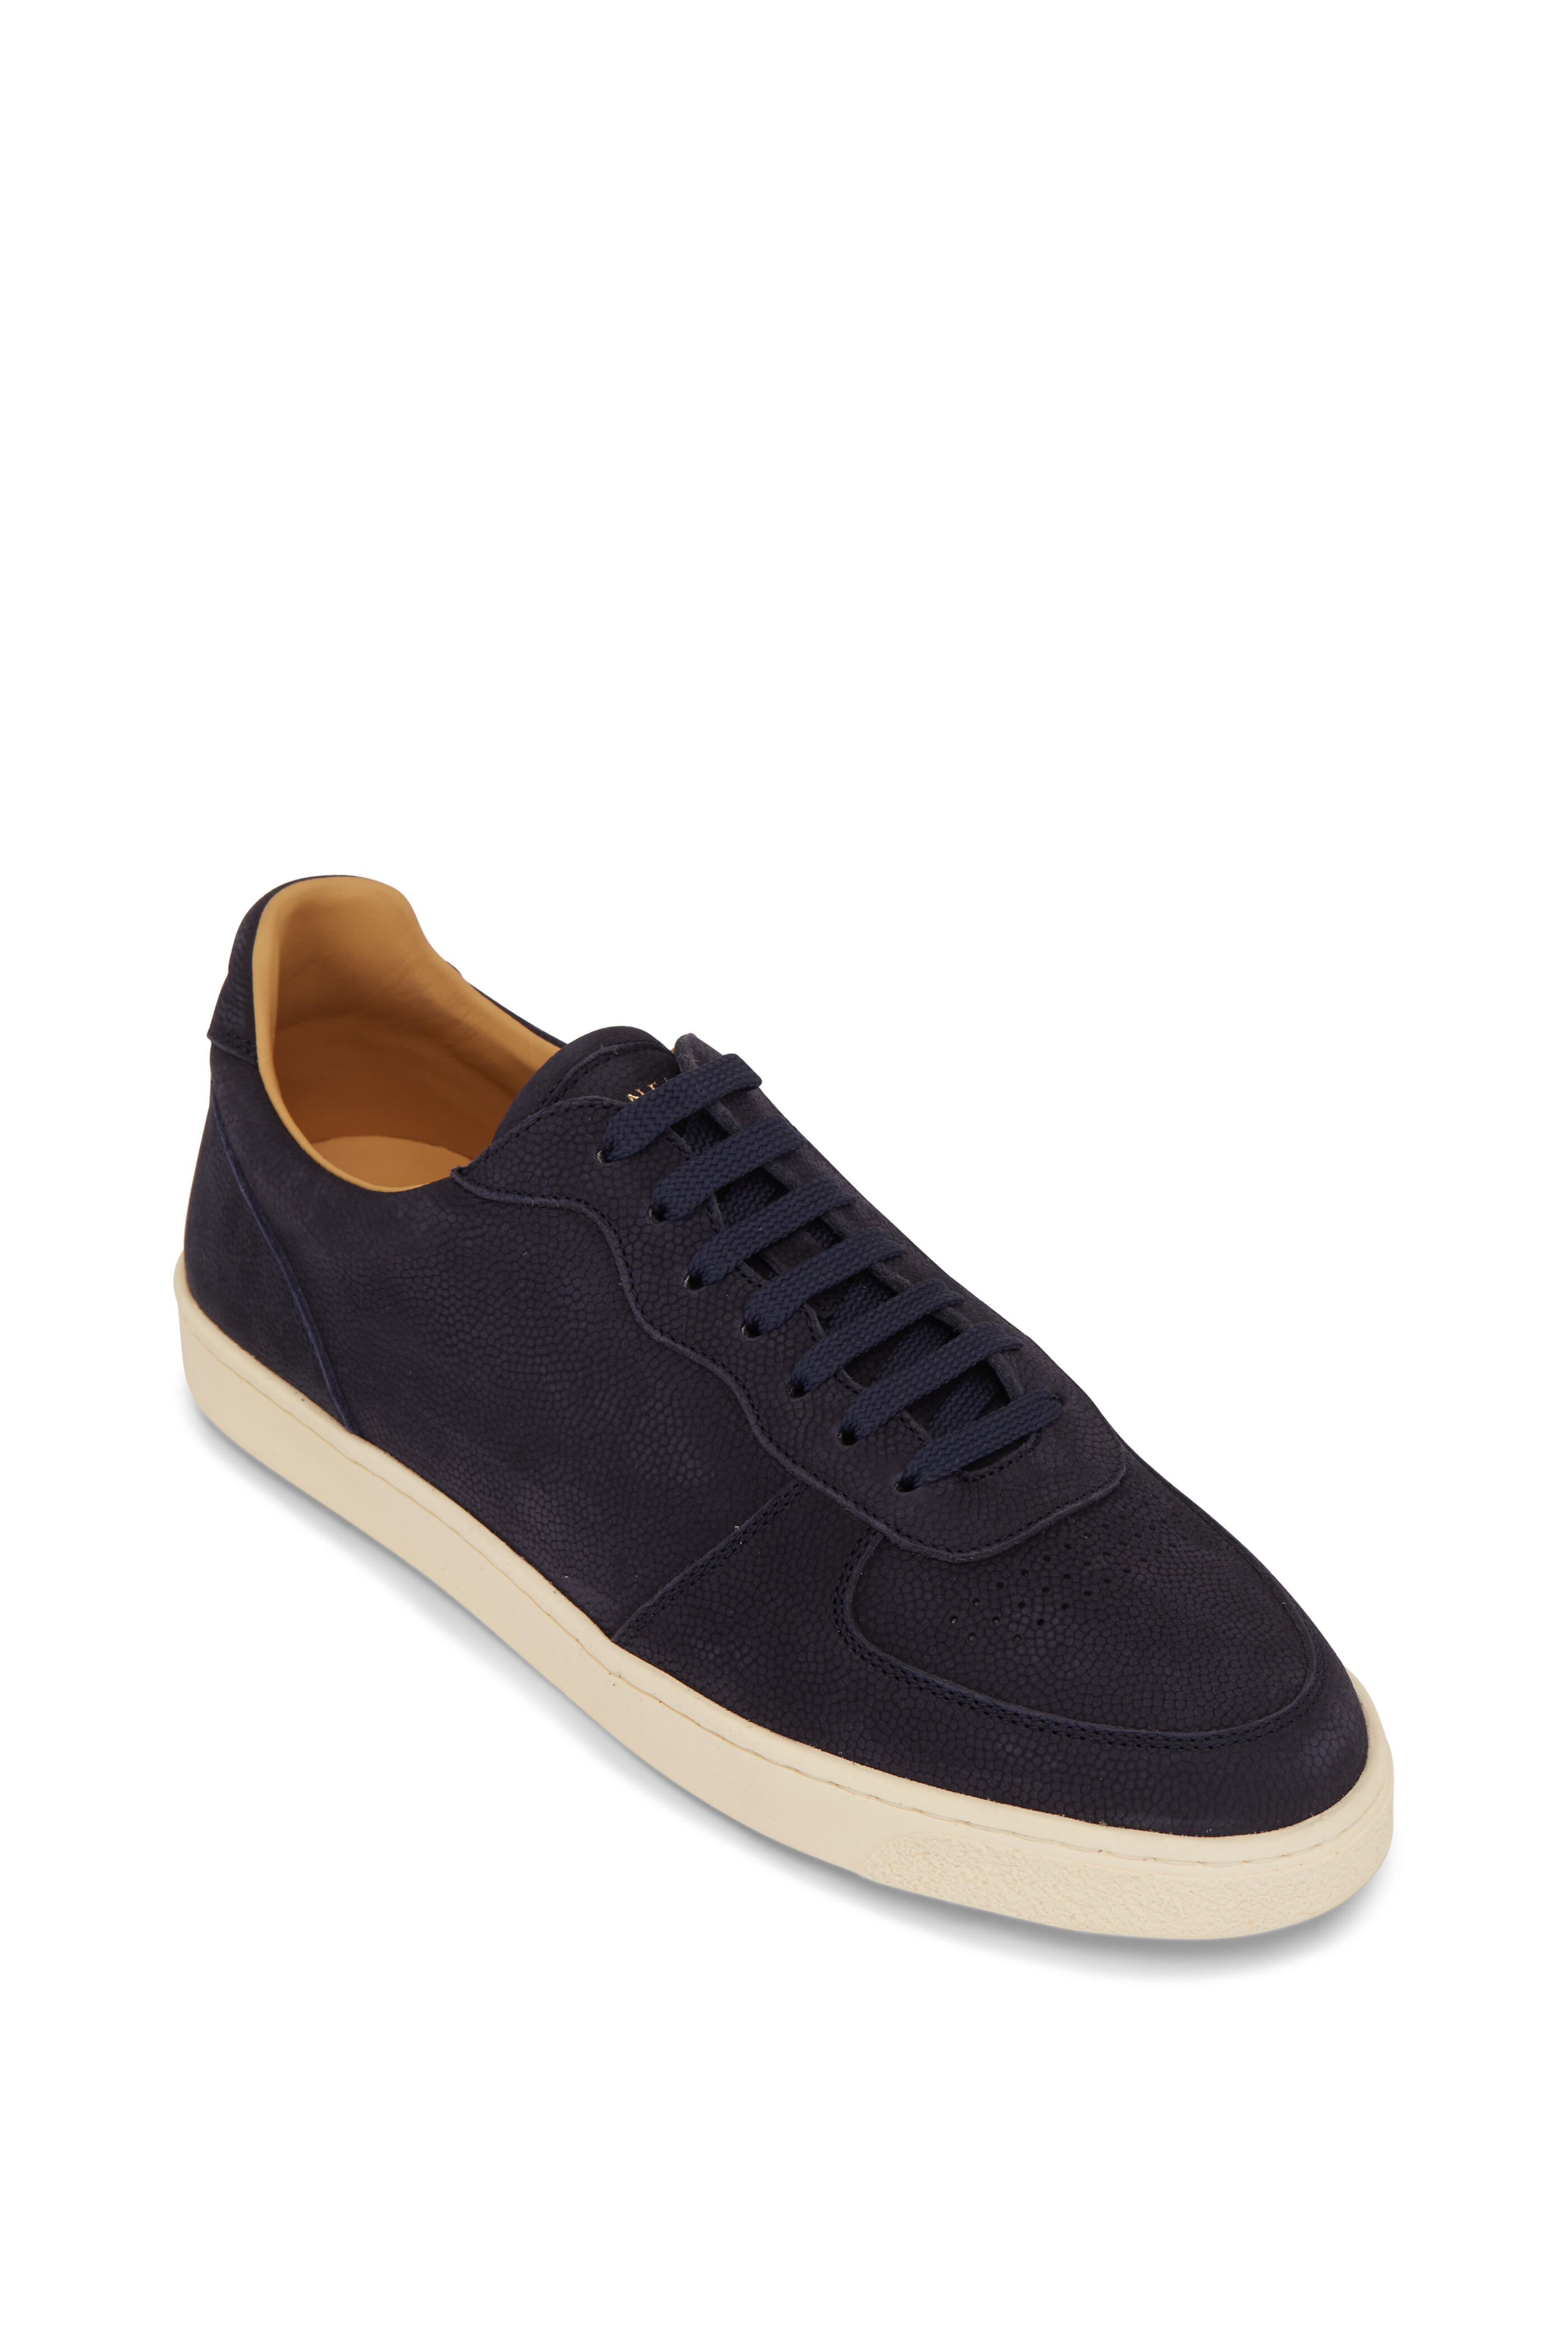 New! Brunello Cucinelli 'Runner' Sneaker Navy Blue Mens 11 US 44 Eur. MSRP  $875